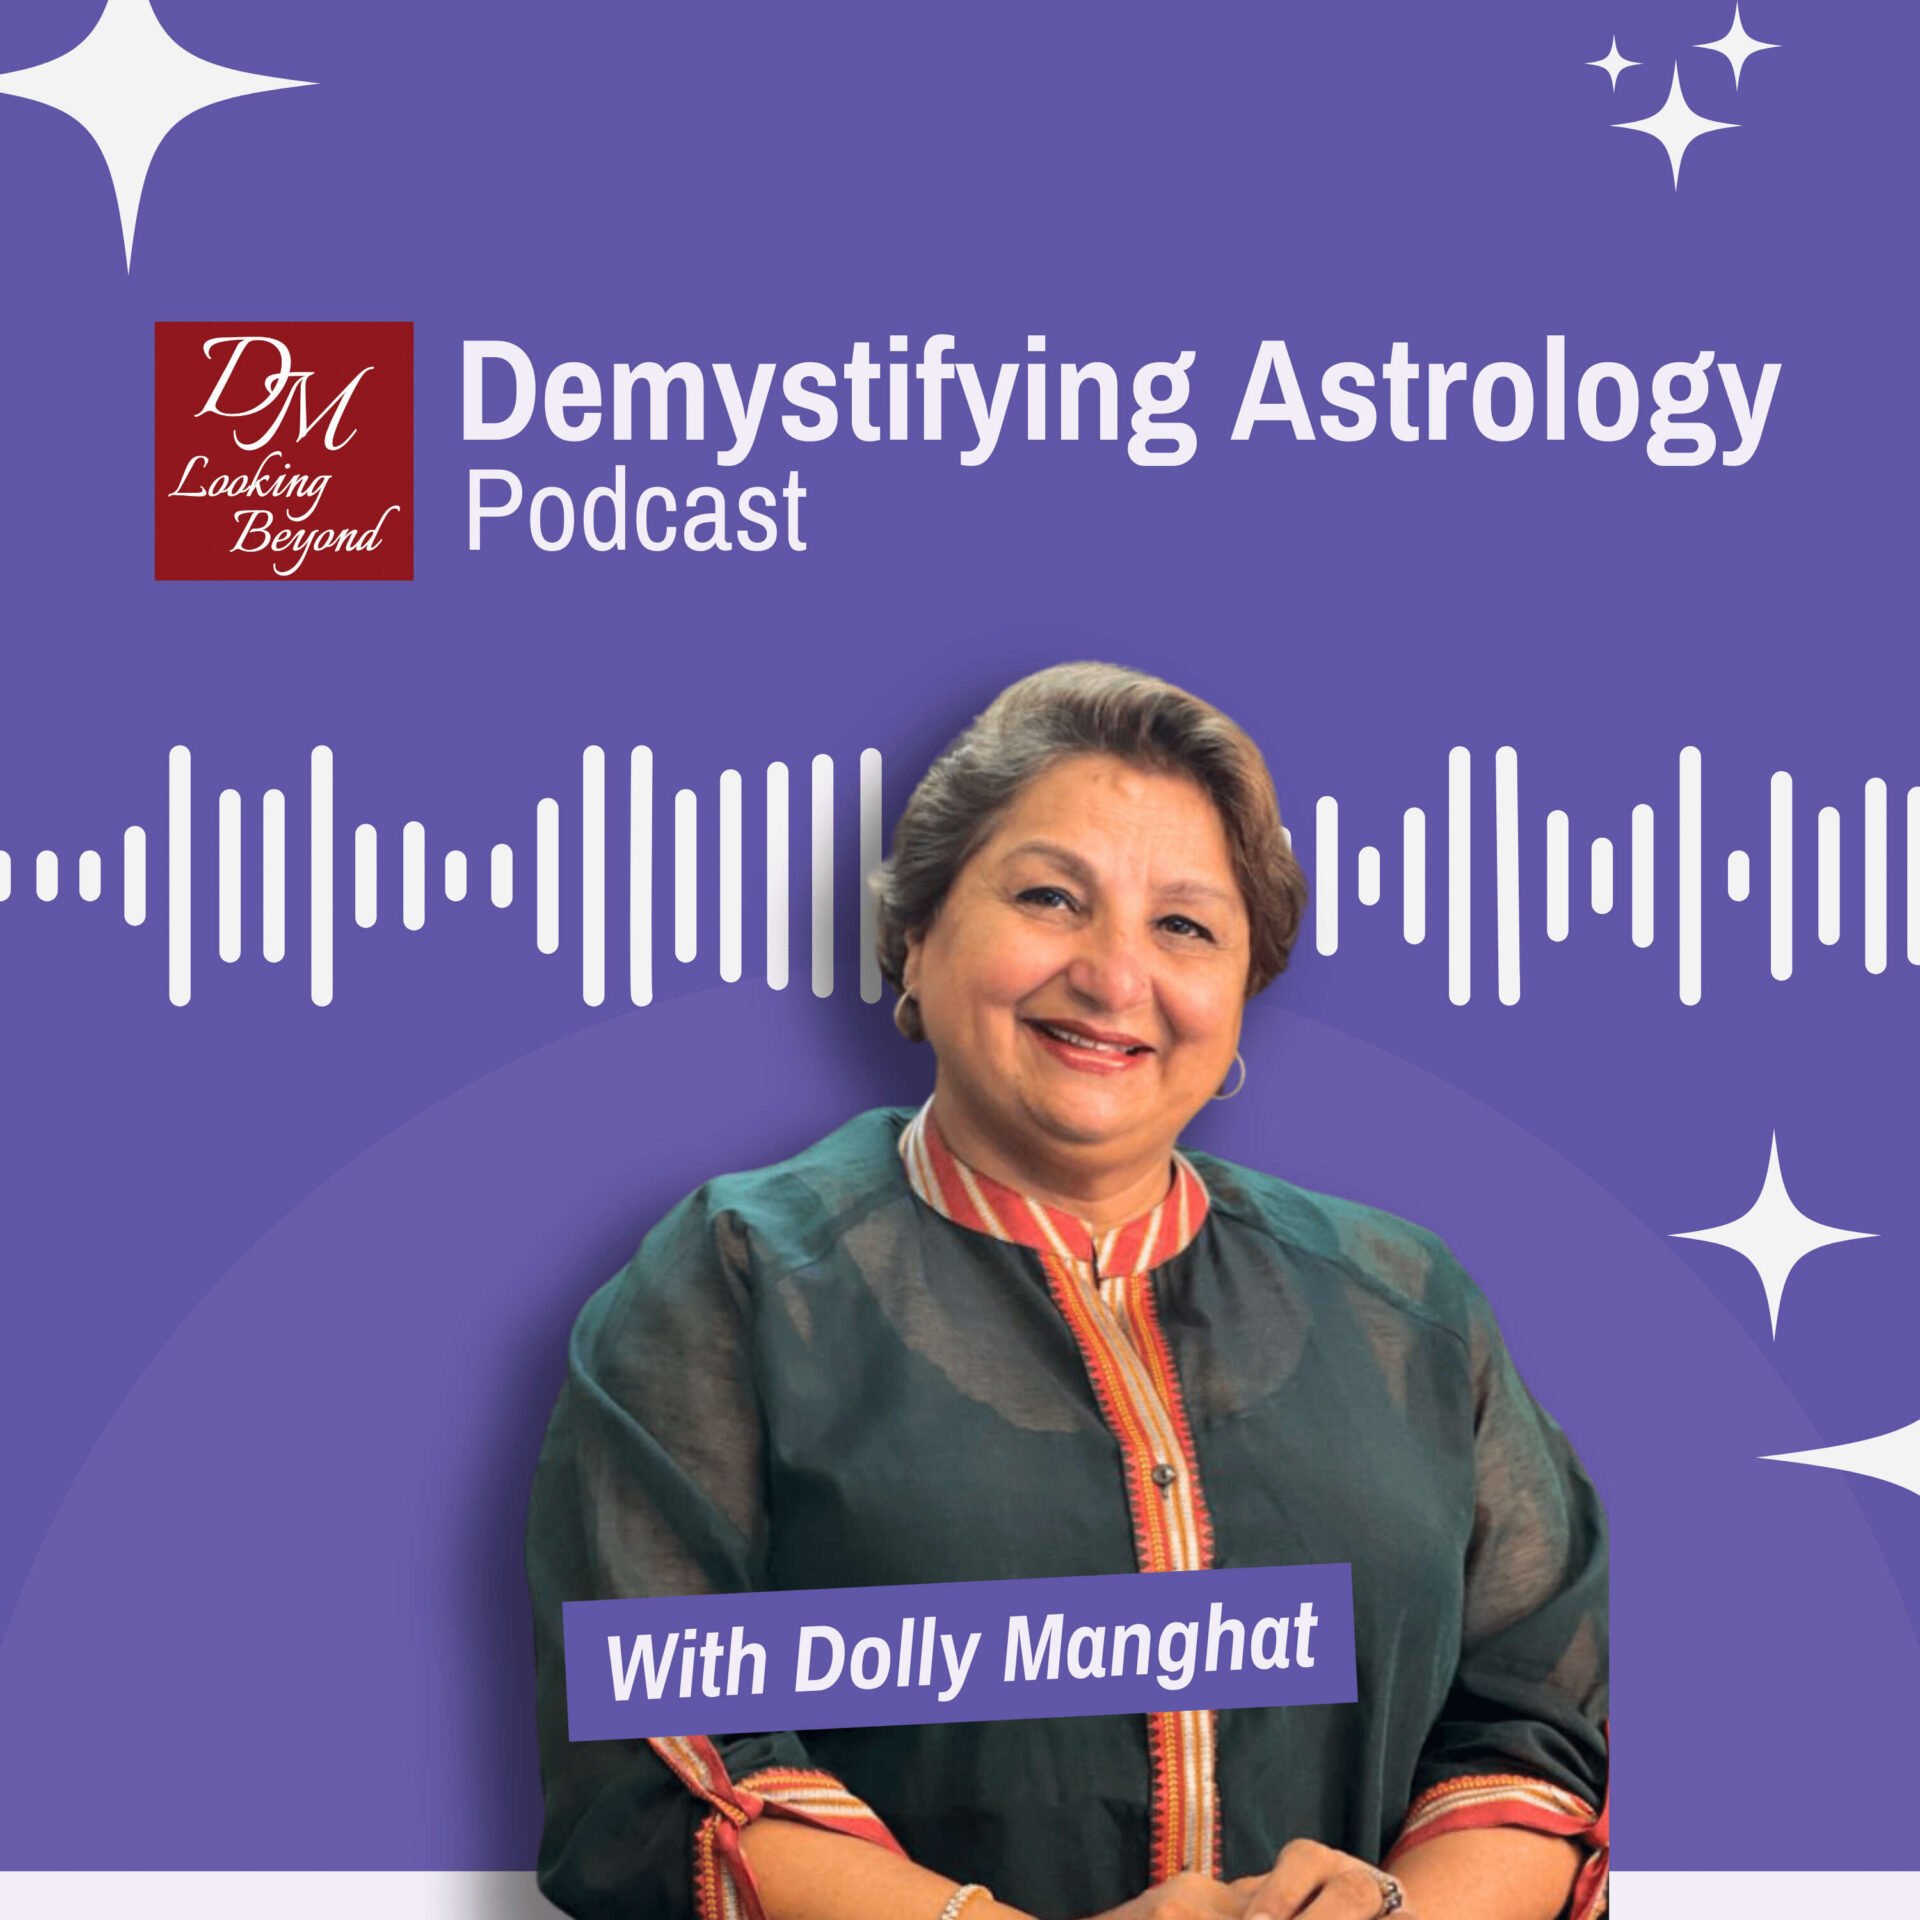 Demystifying Astrology